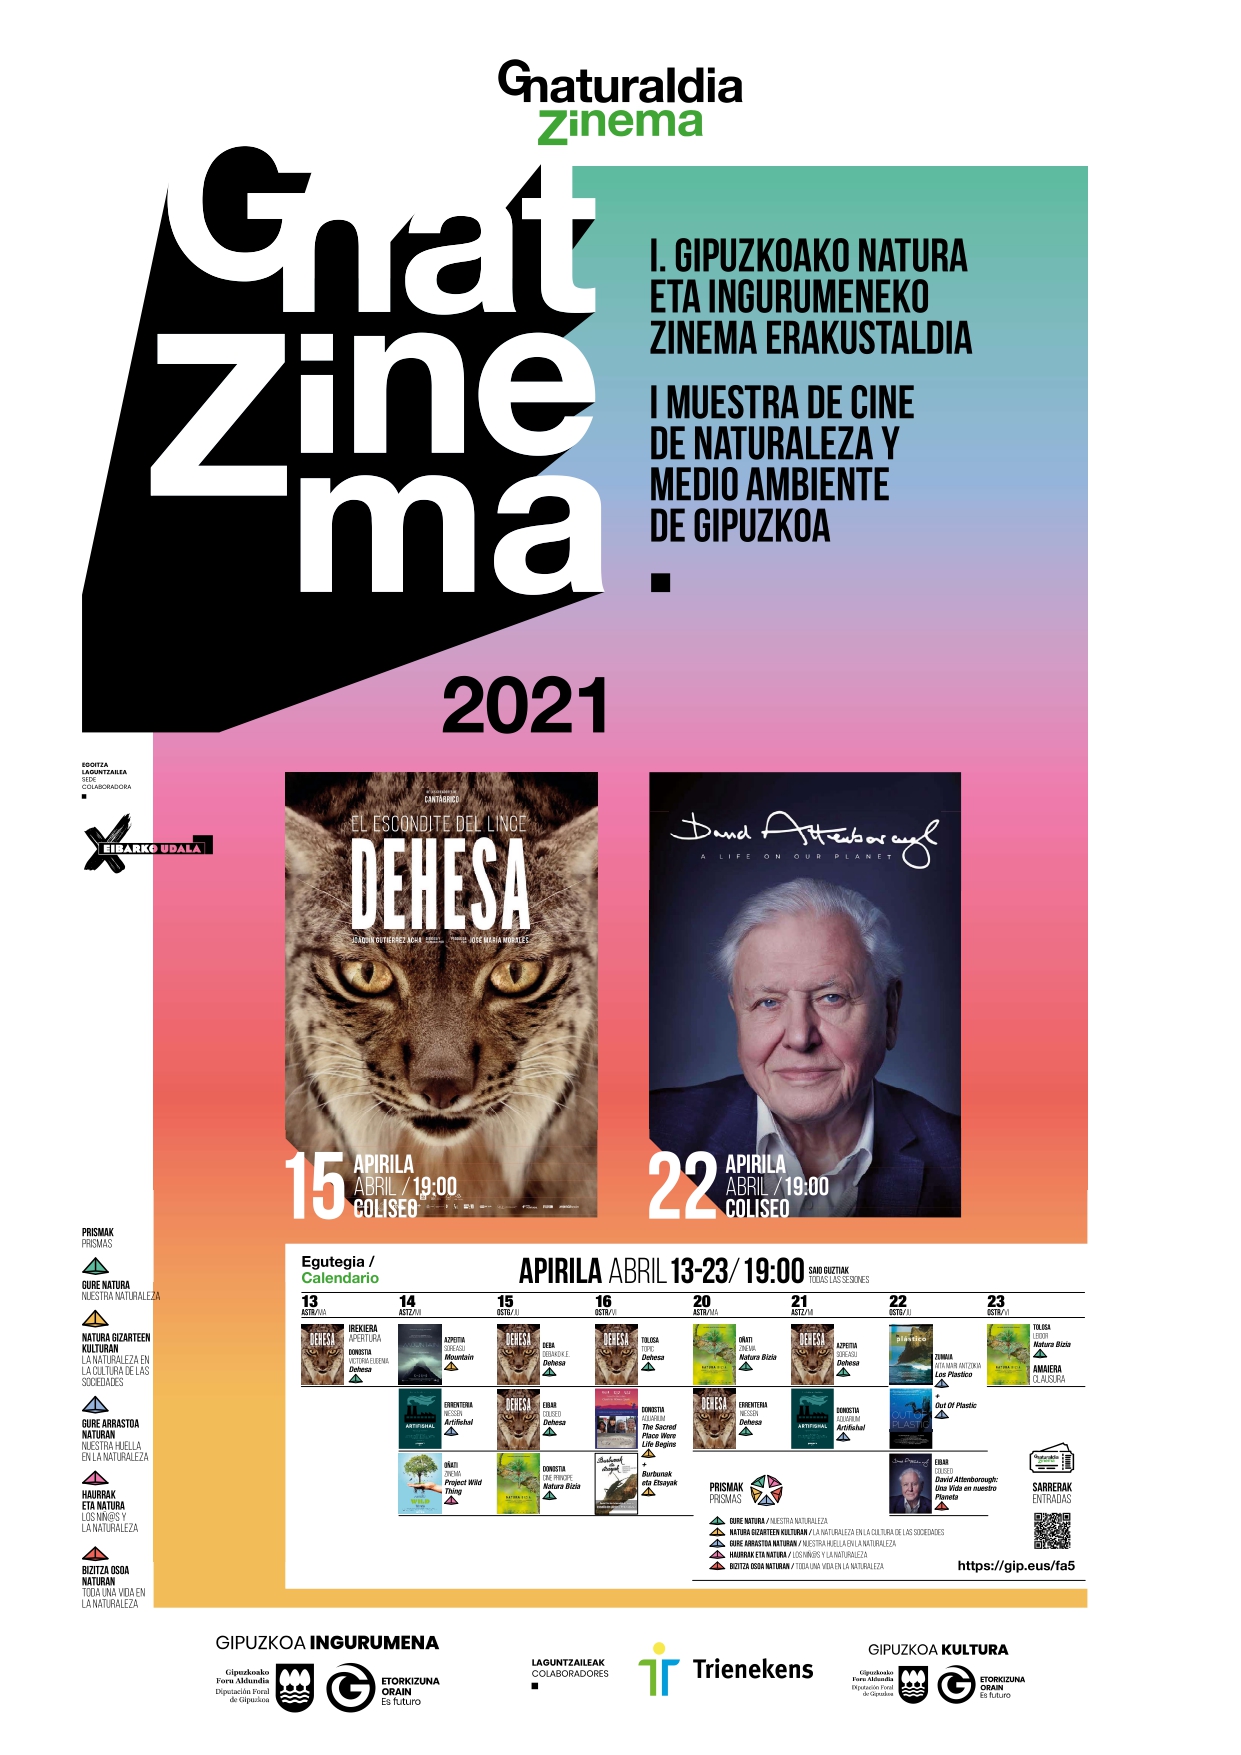 Gnat Zinema: I Muestra de Cine de Naturaleza y Medio Ambiente de Gipuzkoa